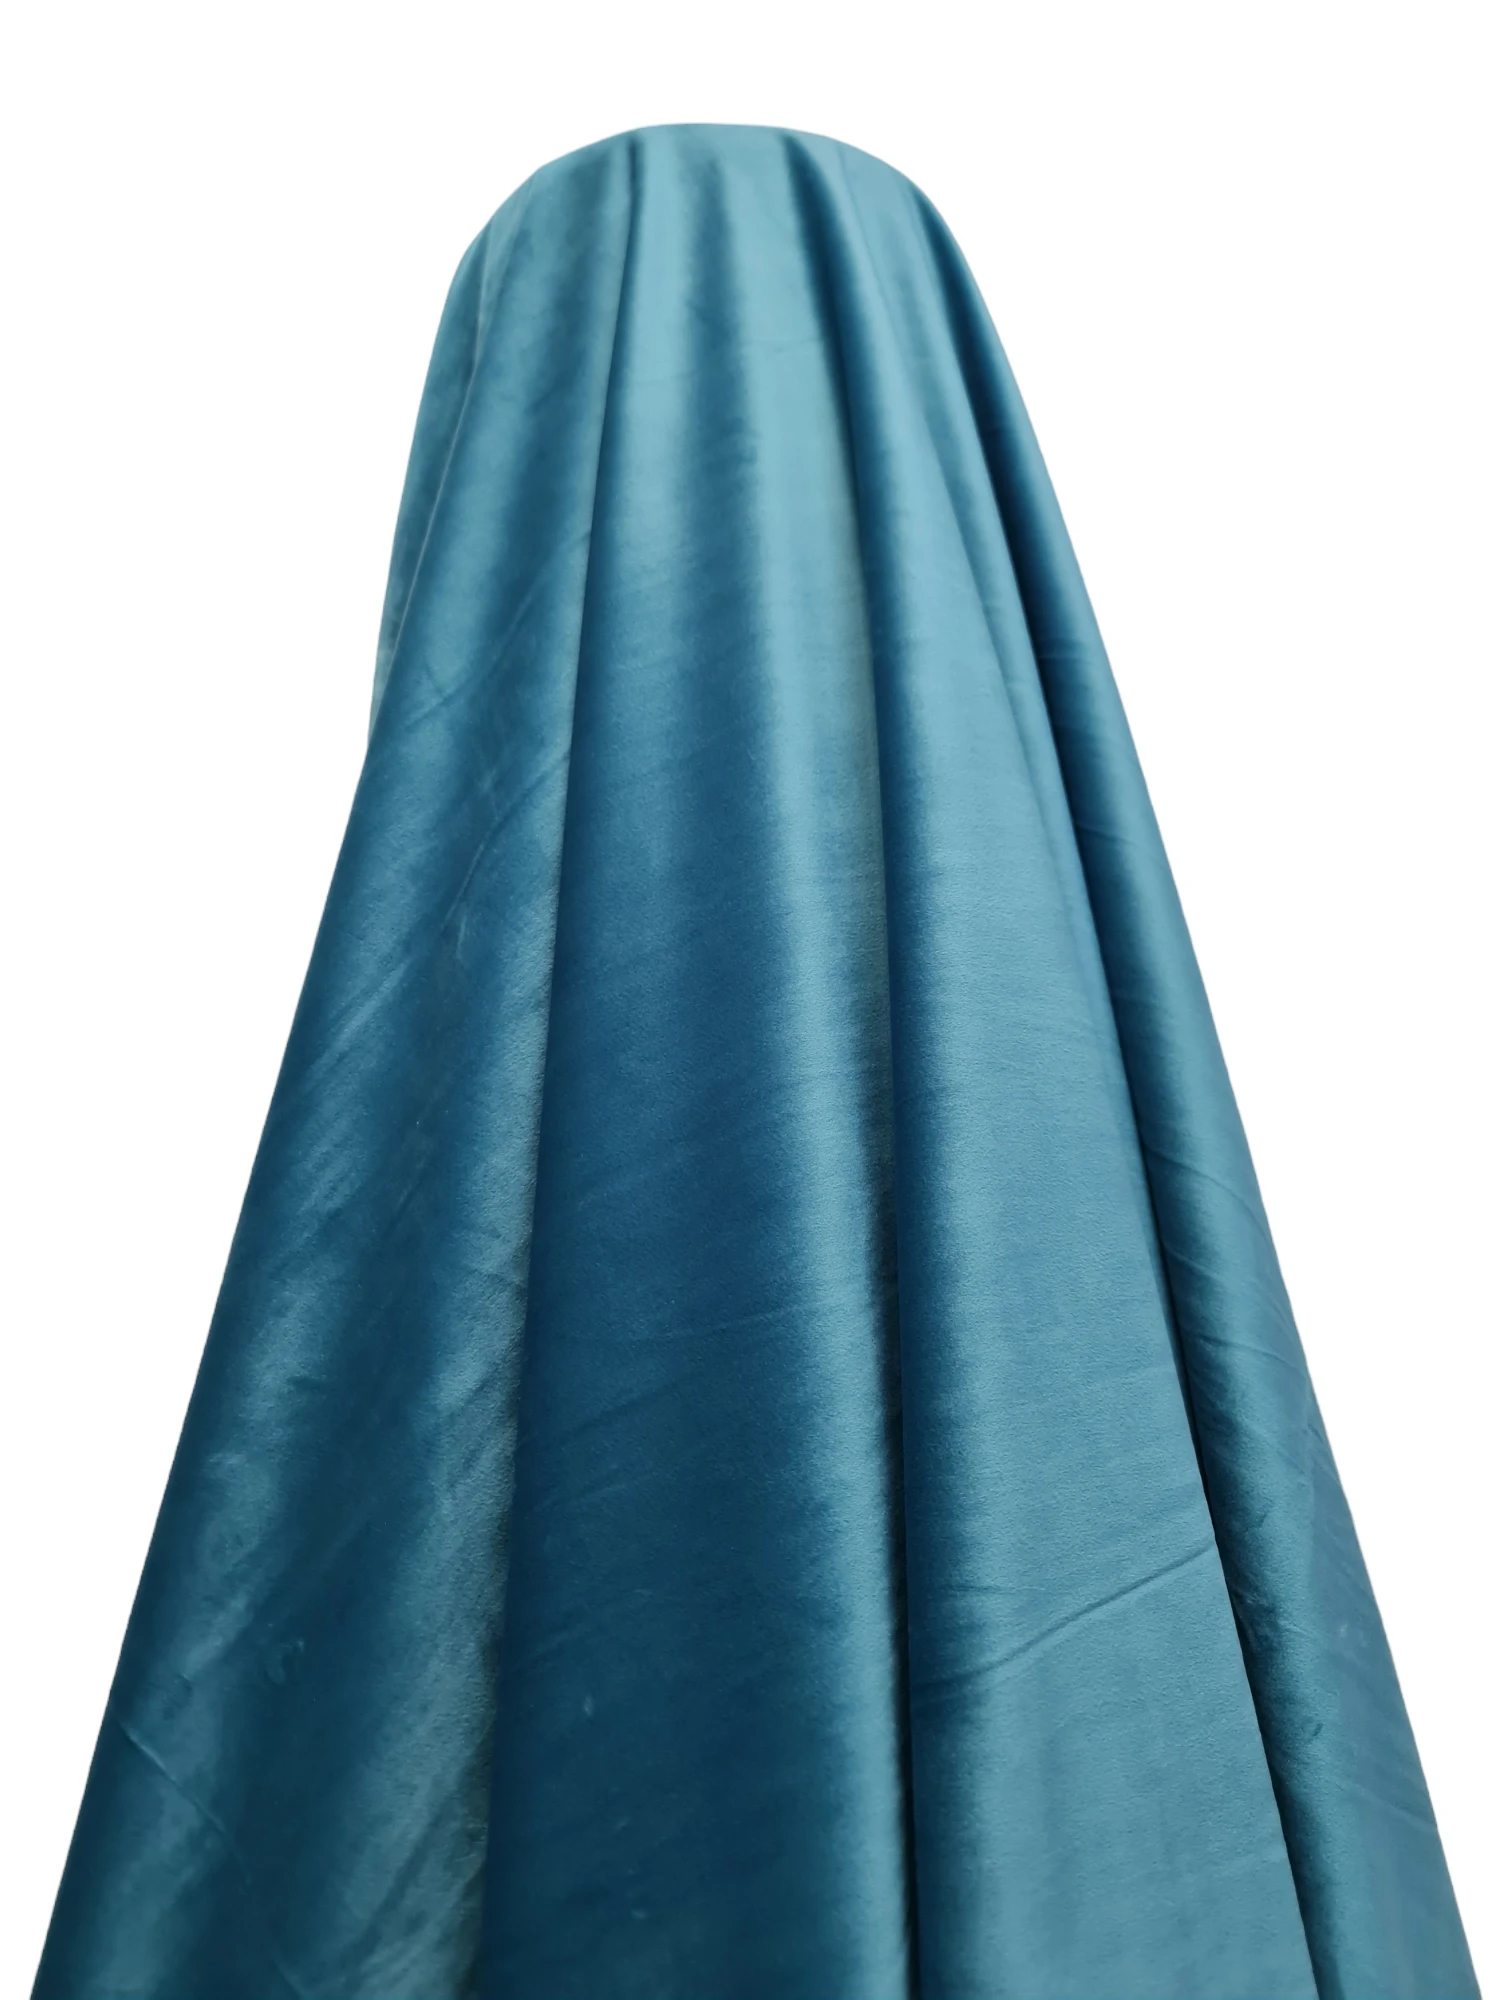 Material draperie catifea albastru turcoaz